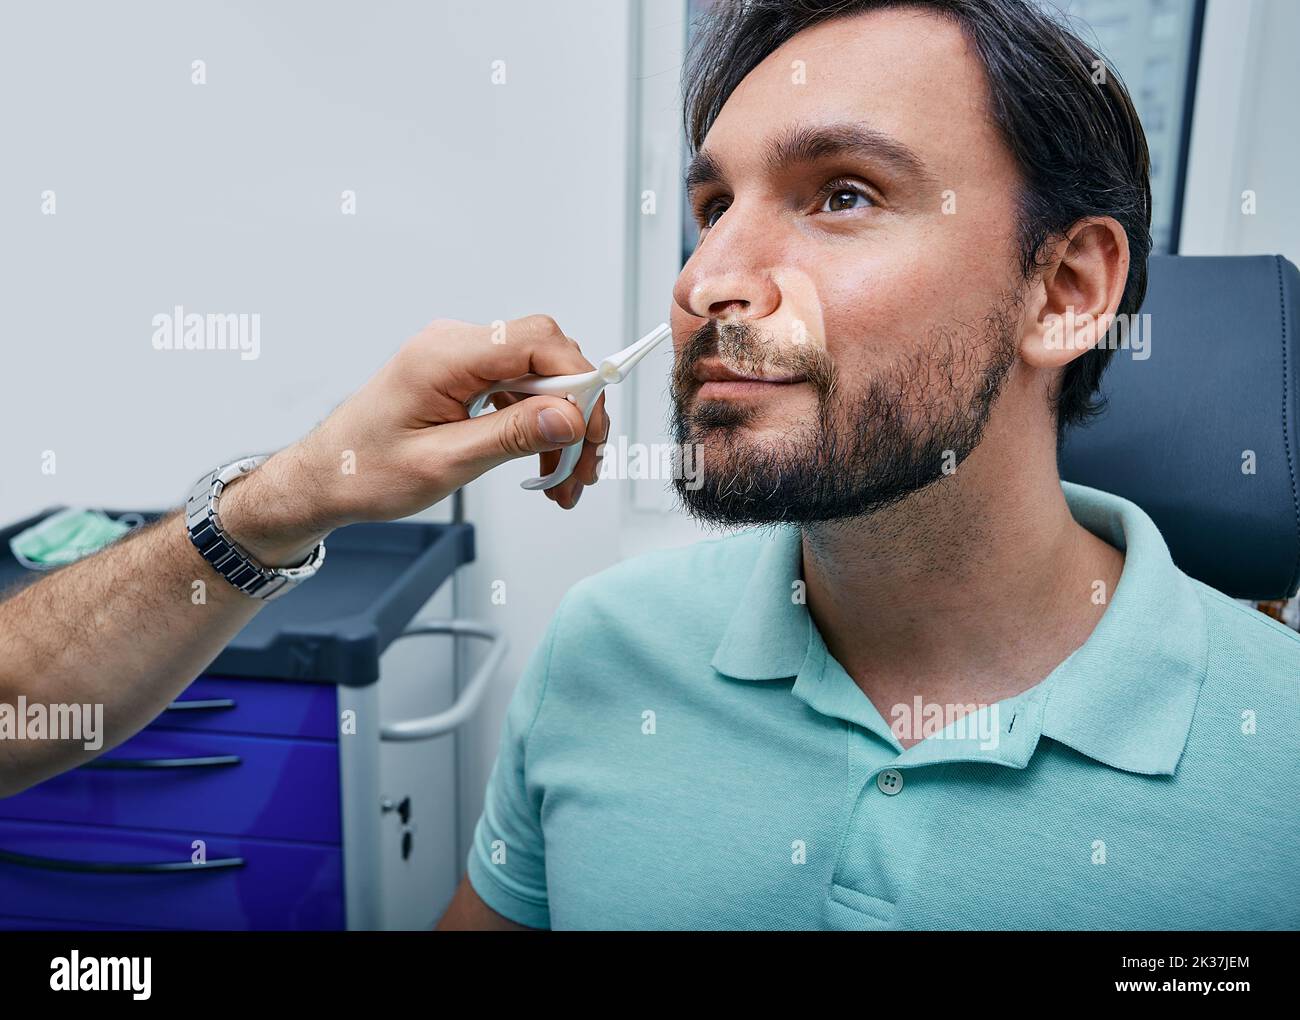 Erwachsener Mann während der Rhinoskopie in der HNO-Praxis. Arzt mit Nasenspekulum oder Rhinoskop zur Untersuchung des Nasenbereichs des Patienten Stockfoto